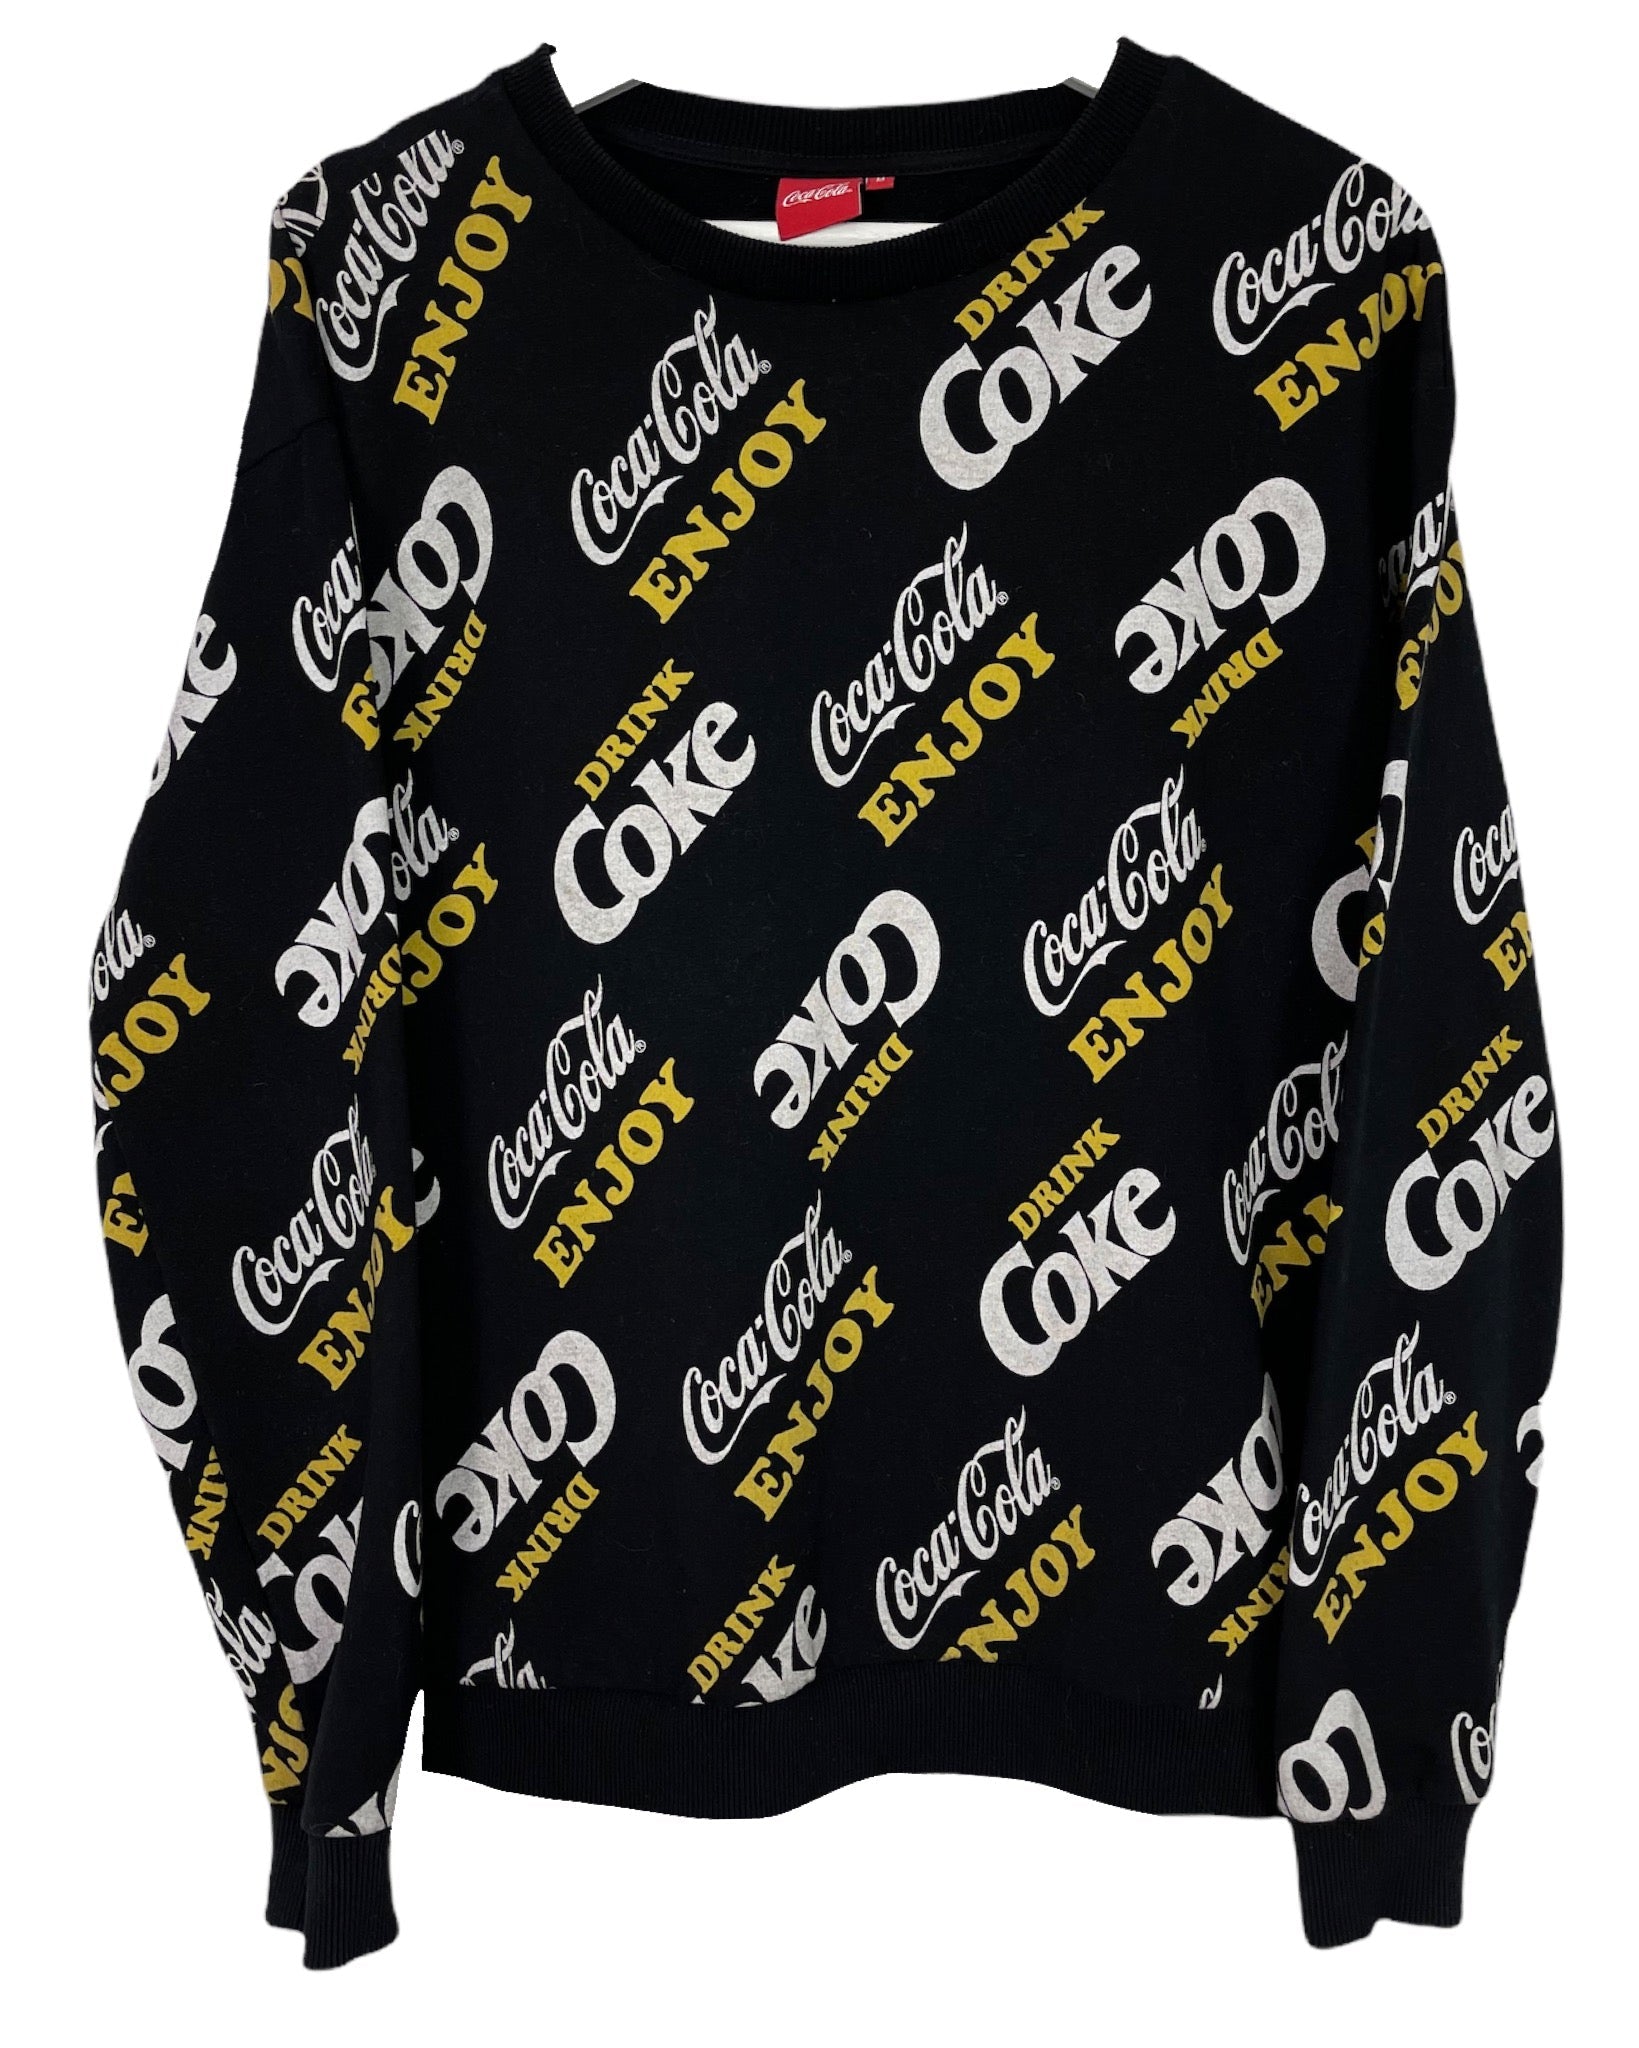  Sweatshirt Coca Cola Sweat - M - PLOMOSTORE